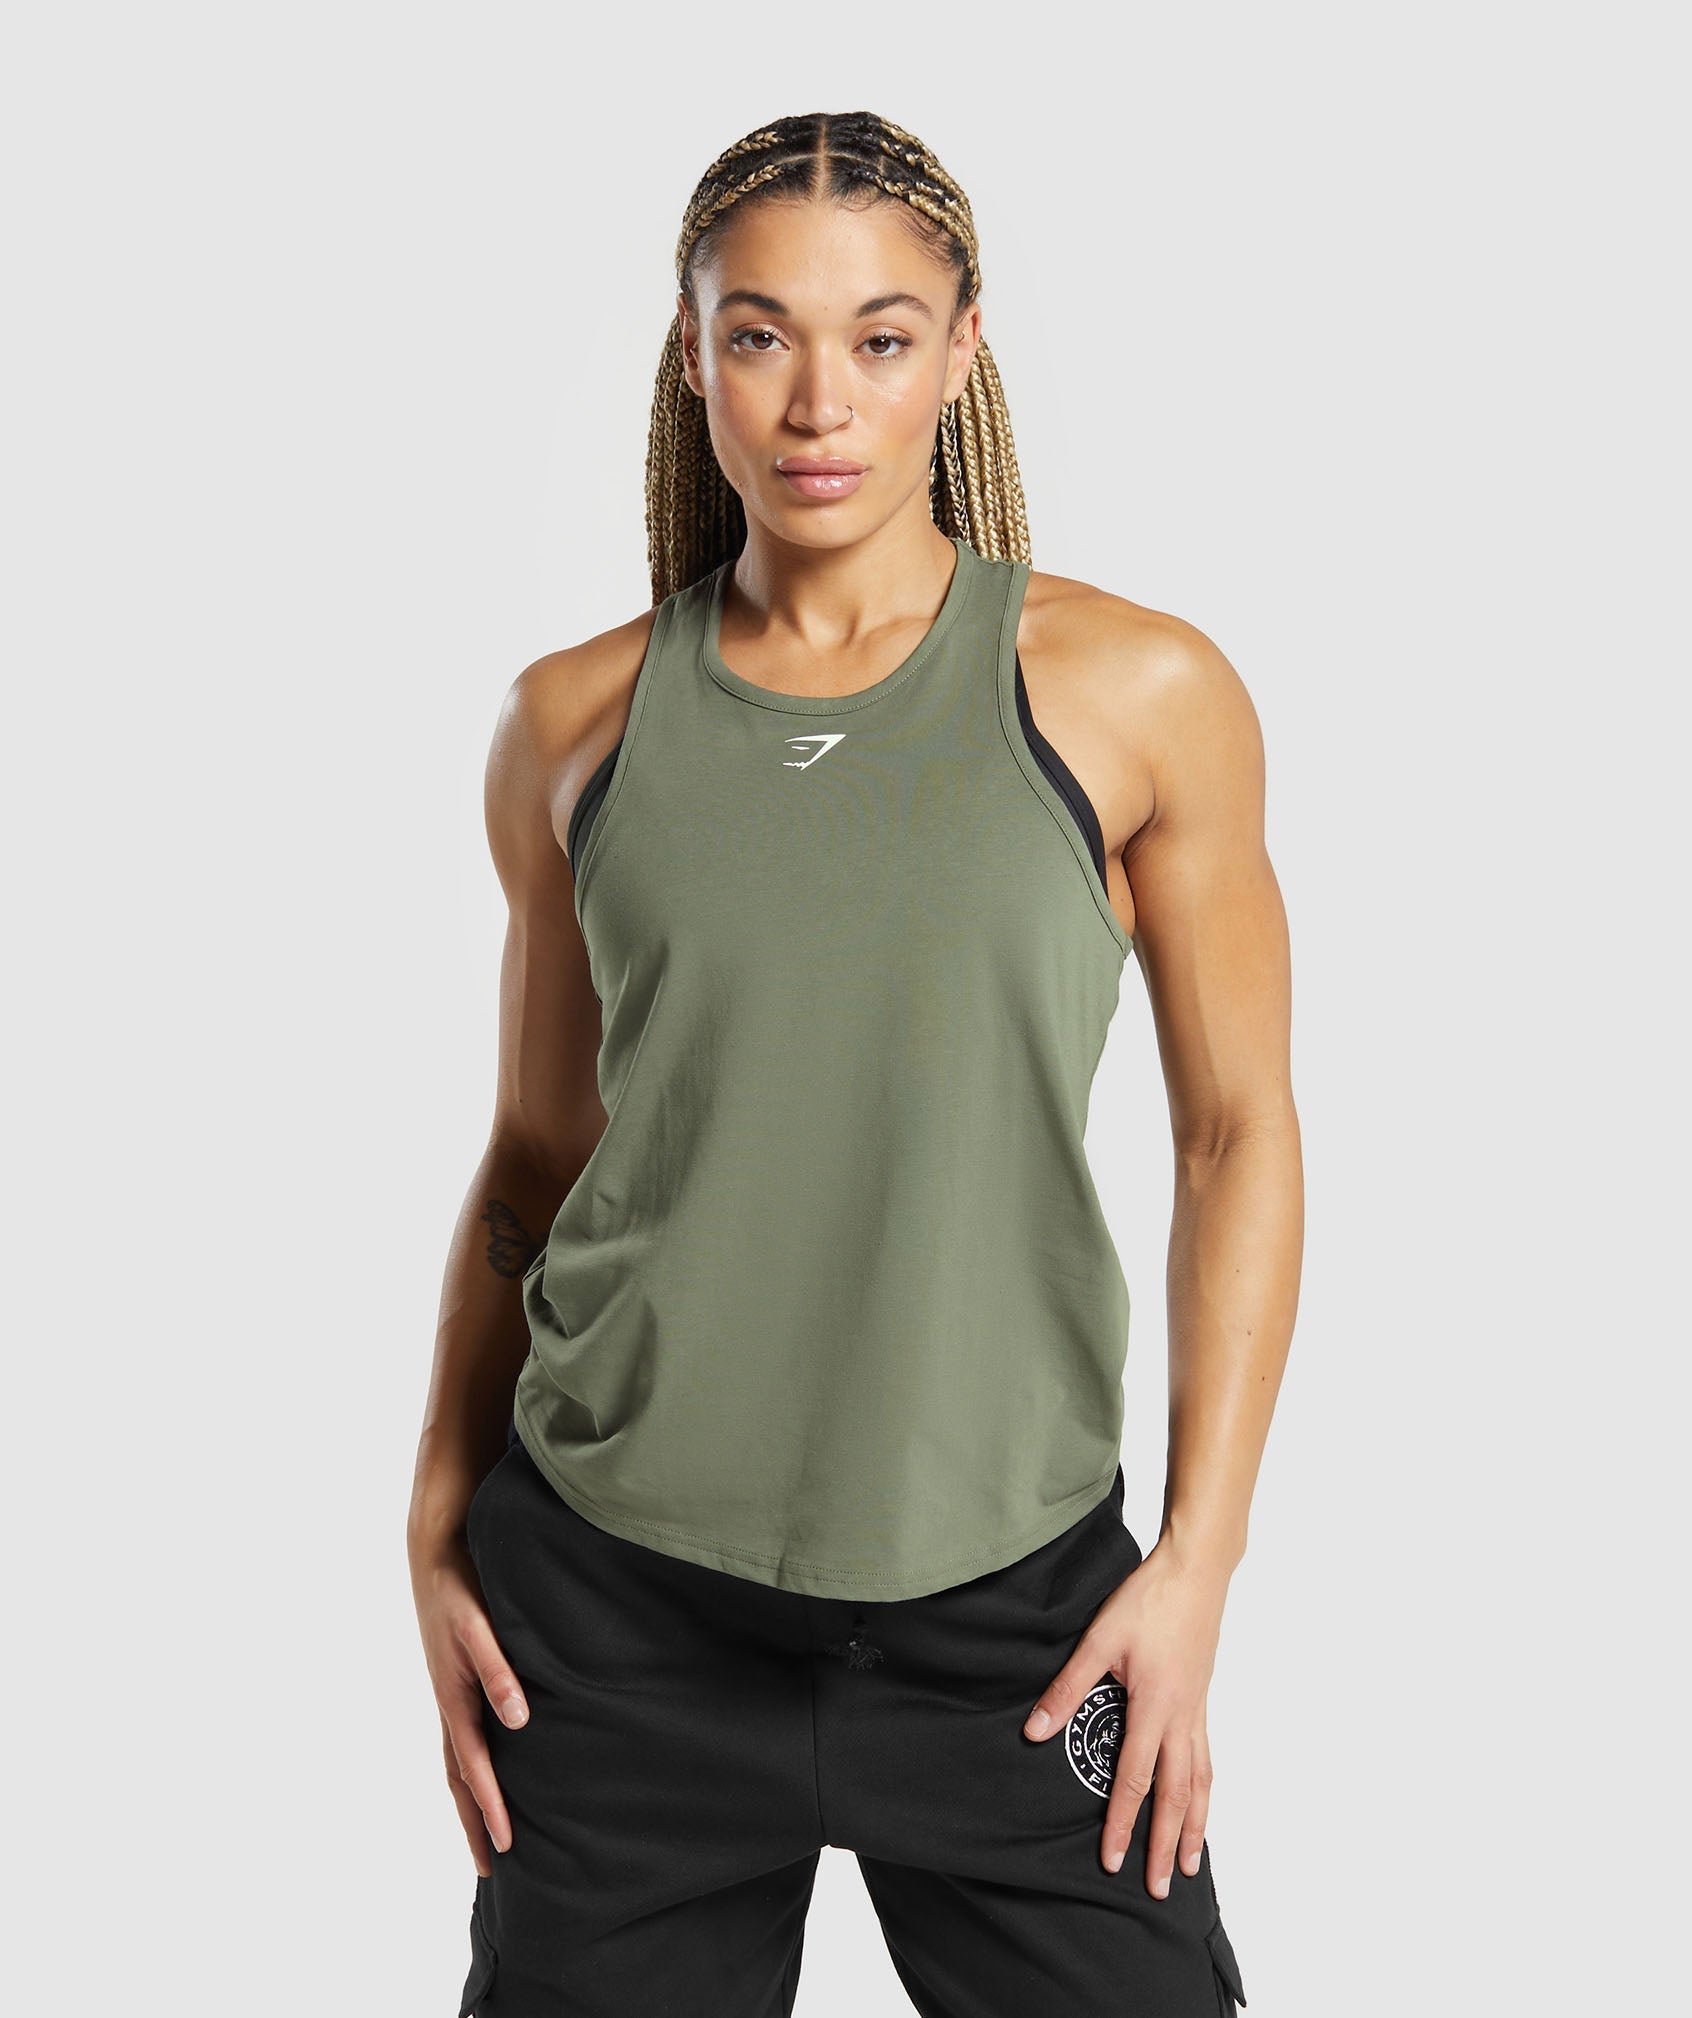 Gymshark Womens Scoop Back Pulse Vest Tank Top Sea Foam Green Size XS